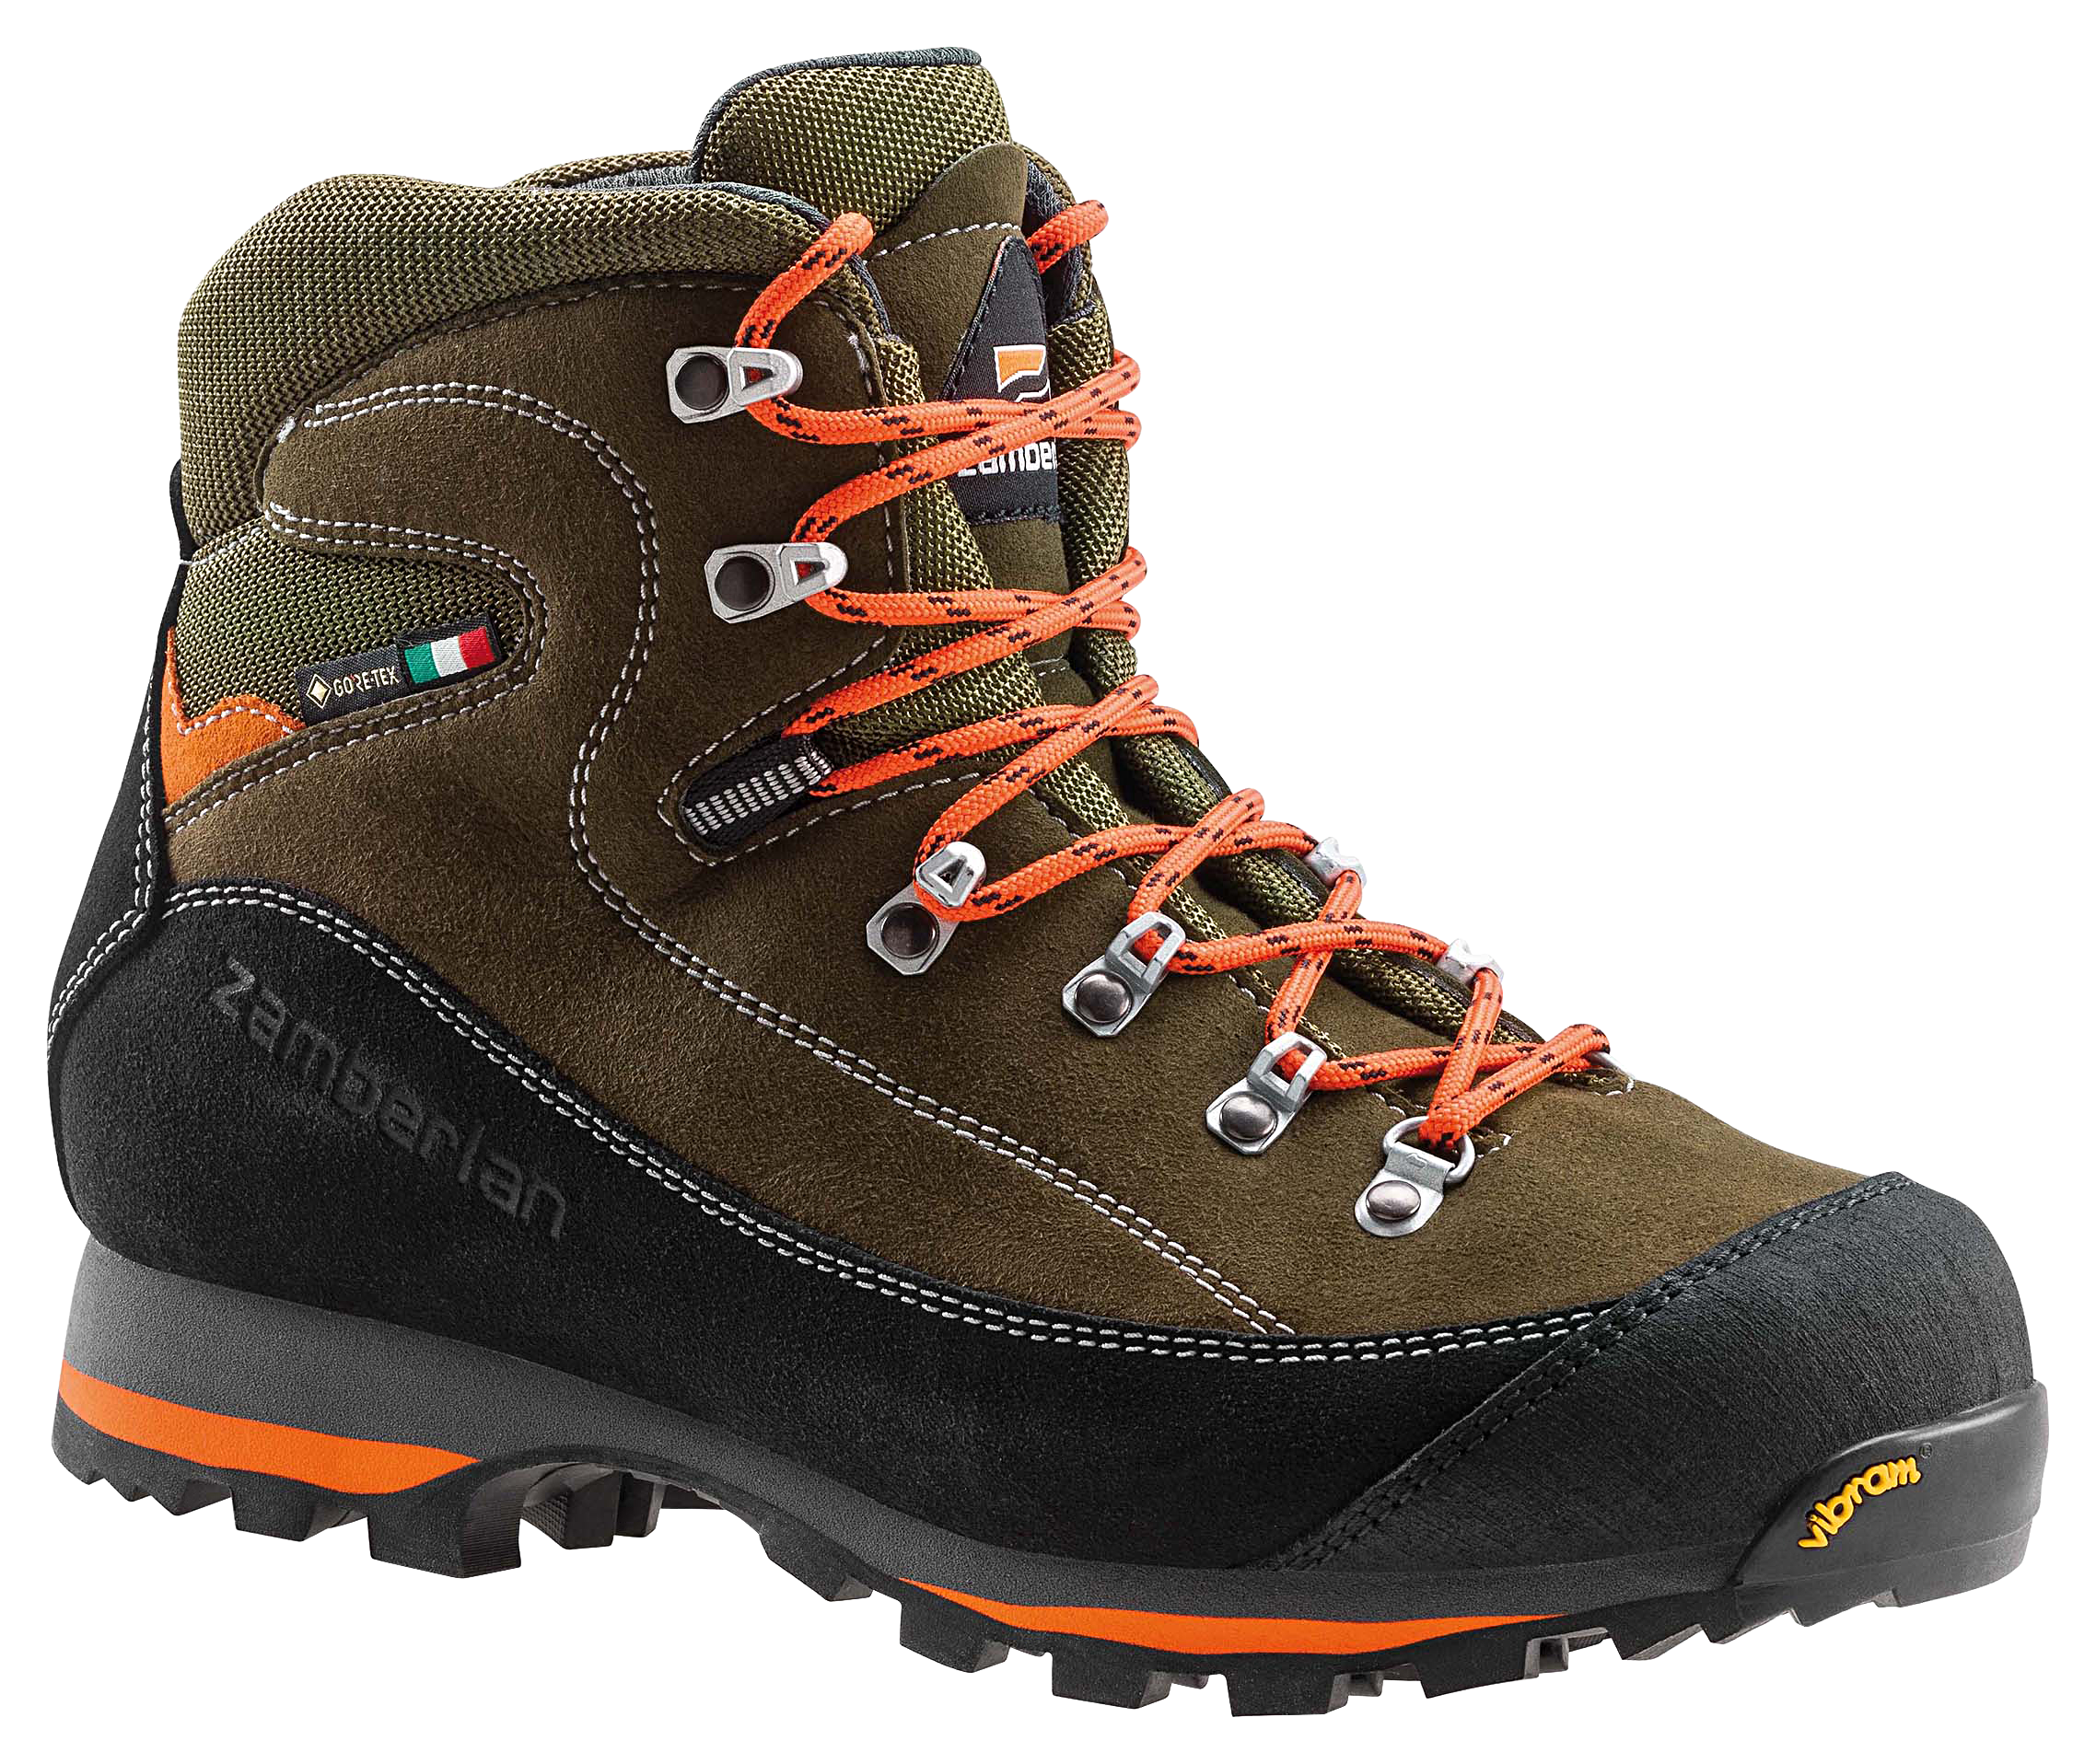 Zamberlan 700 Sierra GTX Waterproof Hunting Boots for Men - Forest - 8M